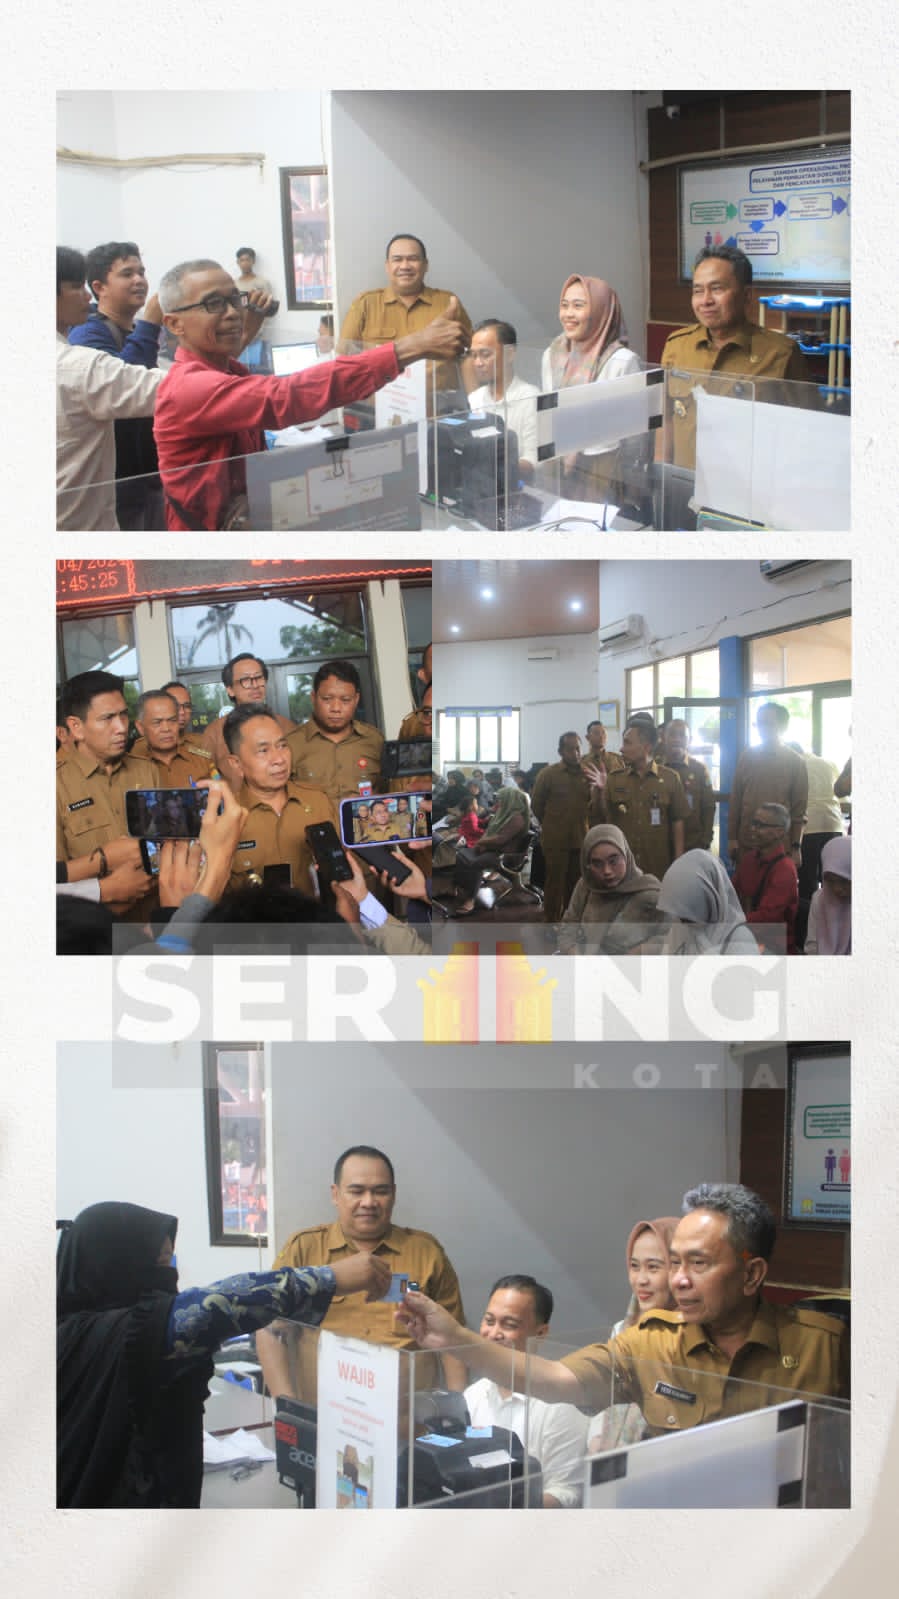 Hari Pertama Masuk Kerja, Pj Walikota Serang monitoring Beberapa Kantor Pemerintahan di Kota Serang, Pj Walikota: "Alhamdulillah hadir semua meski ada yang WFH dan WFO"